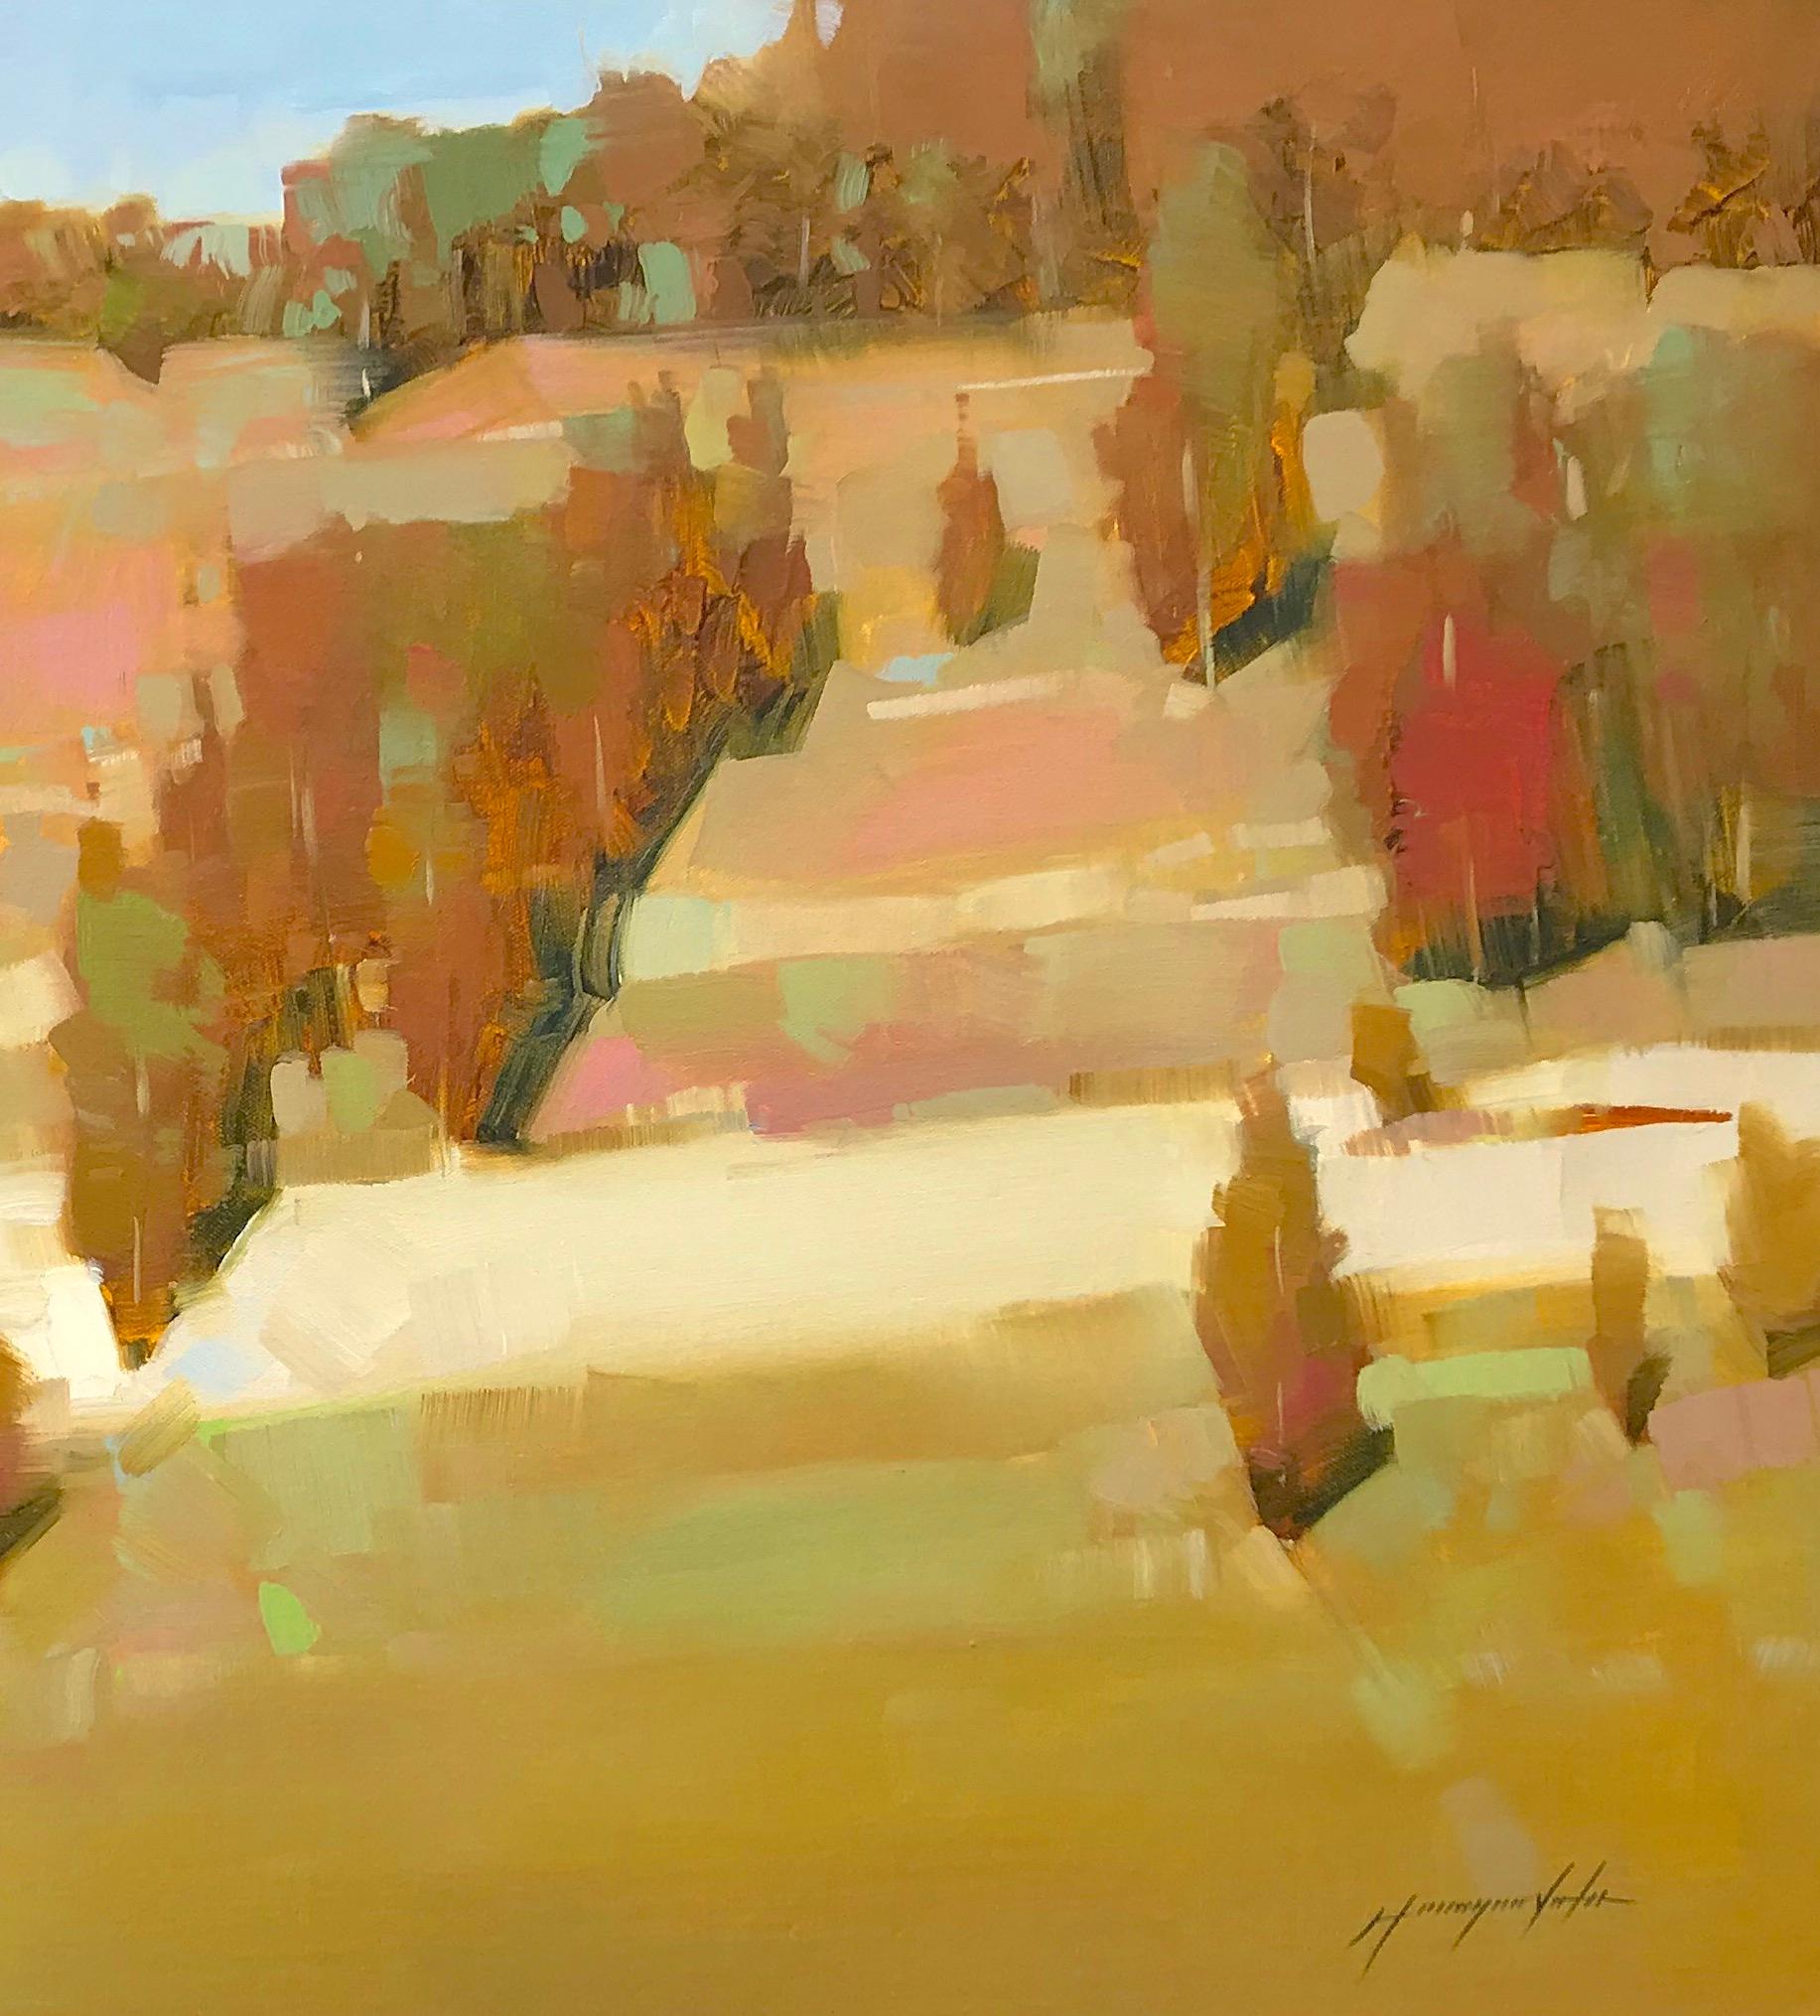 <p>Kommentare des Künstlers<br />Ein sonniger Hügel im Frühherbst, die Bäume fangen an, in Rot und Orange zu leuchten. Rosafarbene und blaue Akzente im Feld verleihen dem Bild Dimension und lenken den Blick zurück auf den klaren blauen Himmel. Teil